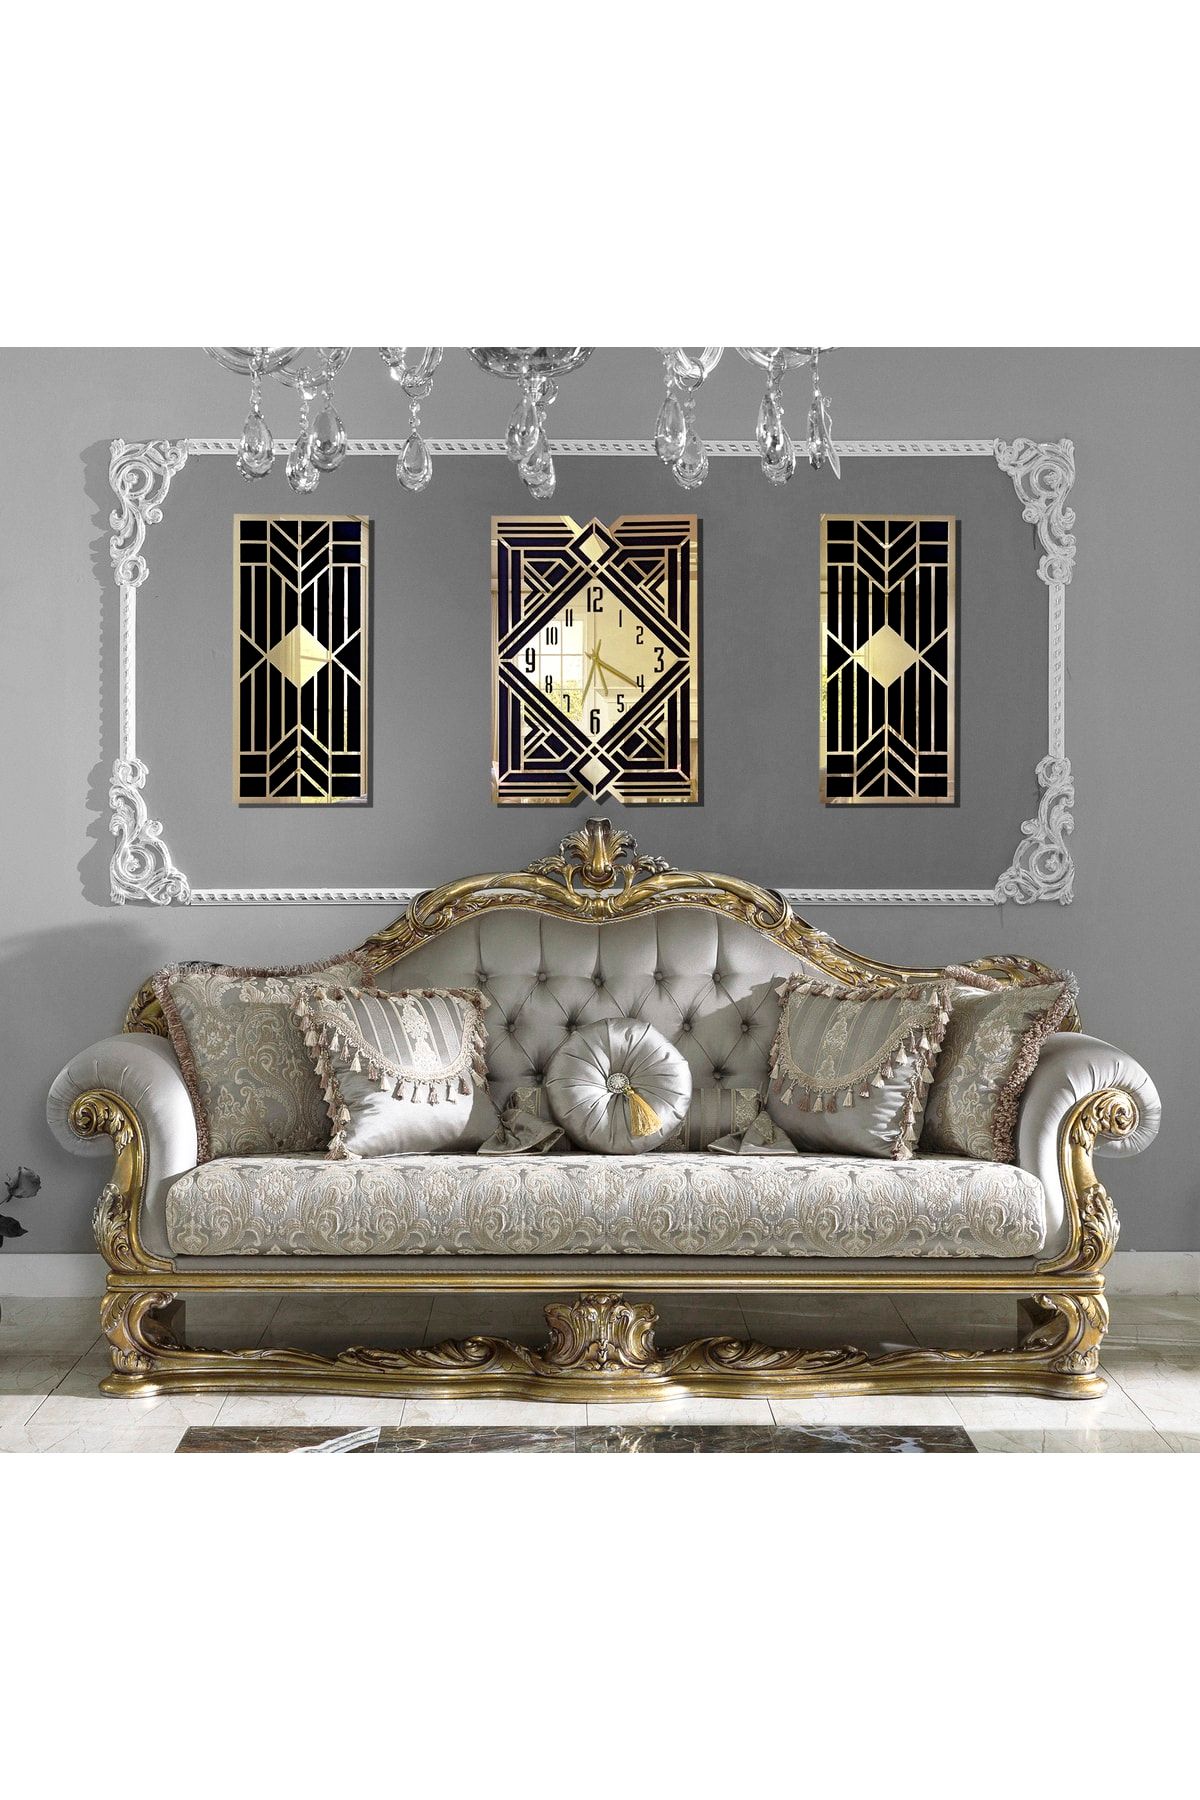 Mitra Dekor Modern Klasik & Geometrik Tasarım Mdf Üzeri Gold Aynalı Pleksi 3lü Duvar Saat Seti